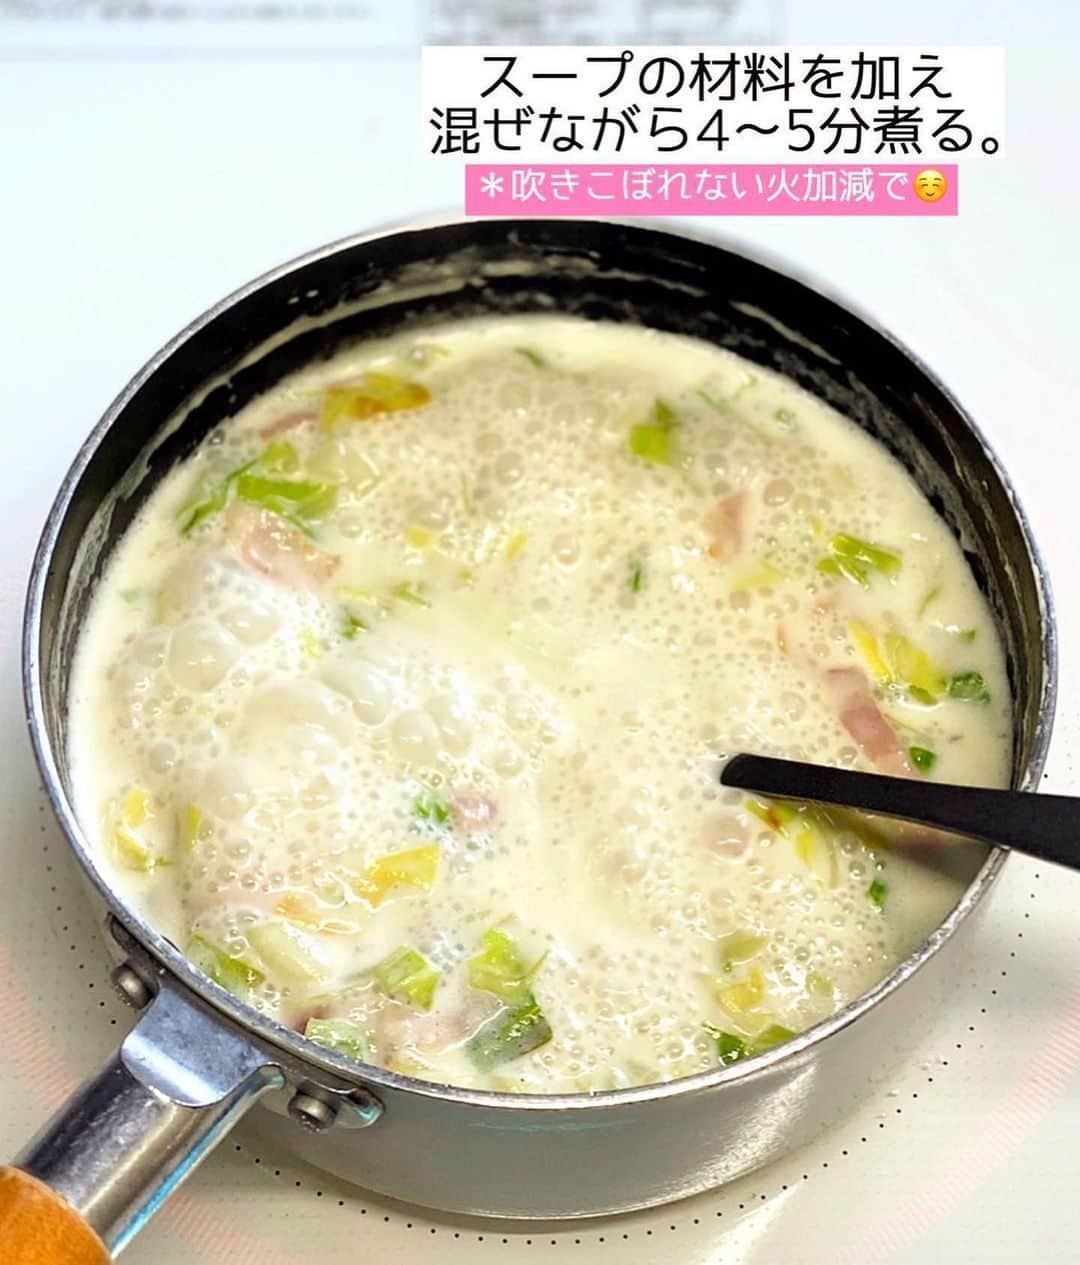 Mizuki【料理ブロガー・簡単レシピ】さんのインスタグラム写真 - (Mizuki【料理ブロガー・簡単レシピ】Instagram)「・朝食やあと一品に💕 ⁡ ［#レシピ ］ ーーーーーーーーーーーーーーーーー キャベツとベーコンのミルクスープ ーーーーーーーーーーーーーーーーー ⁡ ⁡ ⁡ おはようございます☺️   今日ご紹介させていただくのは  \ キャベツとベーコンのミルクスープ /  (再掲載✨)   軽くとろみをつけて食べやすく  ほっこり優しい味わいに仕上げました♩  あっという間にできるので  朝食やあと一品にもおすすめですよ〜💕   まだ朝晩は肌寒いので  よかったらお試し下さいね😋 ⁡ ⁡ 【簡単・時短・節約レシピ更新中🔻】 @mizuki_31cafe ⁡ ⁡ ⁡ ＿＿＿＿＿＿＿＿＿＿＿＿＿＿＿＿＿＿＿ 【2人分】  キャベツ...3枚(150g)  ベーコン...2枚  オリーブオイル...小1  薄力粉...小2  ●水...100ml  ●牛乳...300ml  ●コンソメ...大1/2  ●塩こしょう...少々    1.キャベツは粗みじん切りにする。ベーコンは1cm幅に切る。  2.鍋にオリーブオイルを中火で熱して1をさっと炒め、薄力粉を加えて更に1分炒める。  3.●を加え、混ぜながら4〜5分煮る。  ￣￣￣￣￣￣￣￣￣￣￣￣￣￣￣￣￣￣ ⁡ ⁡ 《ポイント》 ♦︎普通のキャベツでも春キャベツでも同じように作れます♩  ♦︎工程3では吹きこぼれないように火加減を調節して下さい♩  ♦︎牛乳の代わりに豆乳を使う場合、分離する可能性がございますので注意してください☆ ⁡ ⁡ ⁡ ⁡ ⁡ 💬💬💬 ブログの引っ越しにお付き合いいただいて 本当にありがとうございました🙇‍♀️ なんとか無事に更新することができ とりあえずほっとしています。涙 ⁡ そして昨日書いてて思ったのですが 私のブログ歴も10年くらいになっていて。 10年って•••そりゃ歳もとるわなって😅 この10年でSNSも、そしてその捉え方も 大きく変わったような気がします✨ ⁡ ある意味すごい時代に生きてるなって そんな風に思いました。。 ⁡ ⁡ ⁡ ⁡ ⁡ 𖤣𖥧𖥣𖡡𖥧𖤣✨ 愛用している調理器具や器などは #楽天ROOMに載せてます ‎𐩢𐩺 (ハイライトから飛べます🛍) ⁡ ⁡ ⁡ ⁡ ⁡ ⁡ 🔶全国の書店・ネット書店で発売中🔶 ⁡ ✼••┈┈┈┈┈••✼••┈┈┈┈┈••✼ 今日のごはんこれに決まり！ ‎𓊆#Mizukiのレシピノート 500品𓊇 ✼••┈┈┈┈┈••✼••┈┈┈┈┈••✼ ⁡ ˗ˏˋ おかげさまで23万部突破 ˎˊ˗ 料理レシピ本大賞準大賞を受賞しました🙇‍♀️ ⁡ 6000点の中からレシピを厳選し まさかの【500レシピ掲載】❣️ 肉や魚のメインおかずはもちろん 副菜、丼、麺、スープ、お菓子 ハレの日のレシピ、鍋のレシピまで 全てこの一冊で完結𓌉◯𓇋✨ ⁡ ⁡ ⁡ 📕新刊発売中📕 ⁡ ✼••┈┈┈••✼••┈┈┈••✼ Mizukiのカンタン手作り   𓊆 #3時のおやつ 𓊇 ✼••┈┈┈••✼••┈┈┈••✼ ⁡ 『3分クッキング』で連載中の 「Mizukiのカンタン手作り」 ‎4年分のおやつが1冊になりました！ ❝オーブンなしで❞ 身近な材料と道具でできる 簡単、手軽なおやつを80品🍪 ⁡ ⁡ ⁡ ⁡ ⁡ ⁡ #キャベツとベーコンのミルクスープm #キャベツ #キャベツレシピ #春キャベツ #ベーコン #牛乳 #牛乳レシピ #スープ #スープレシピ #料理 #時短レシピ  #節約料理 #簡単料理  #時短料理  #mizukiレシピ  #アルモンデ #節約レシピ #簡単レシピ」3月30日 7時34分 - mizuki_31cafe